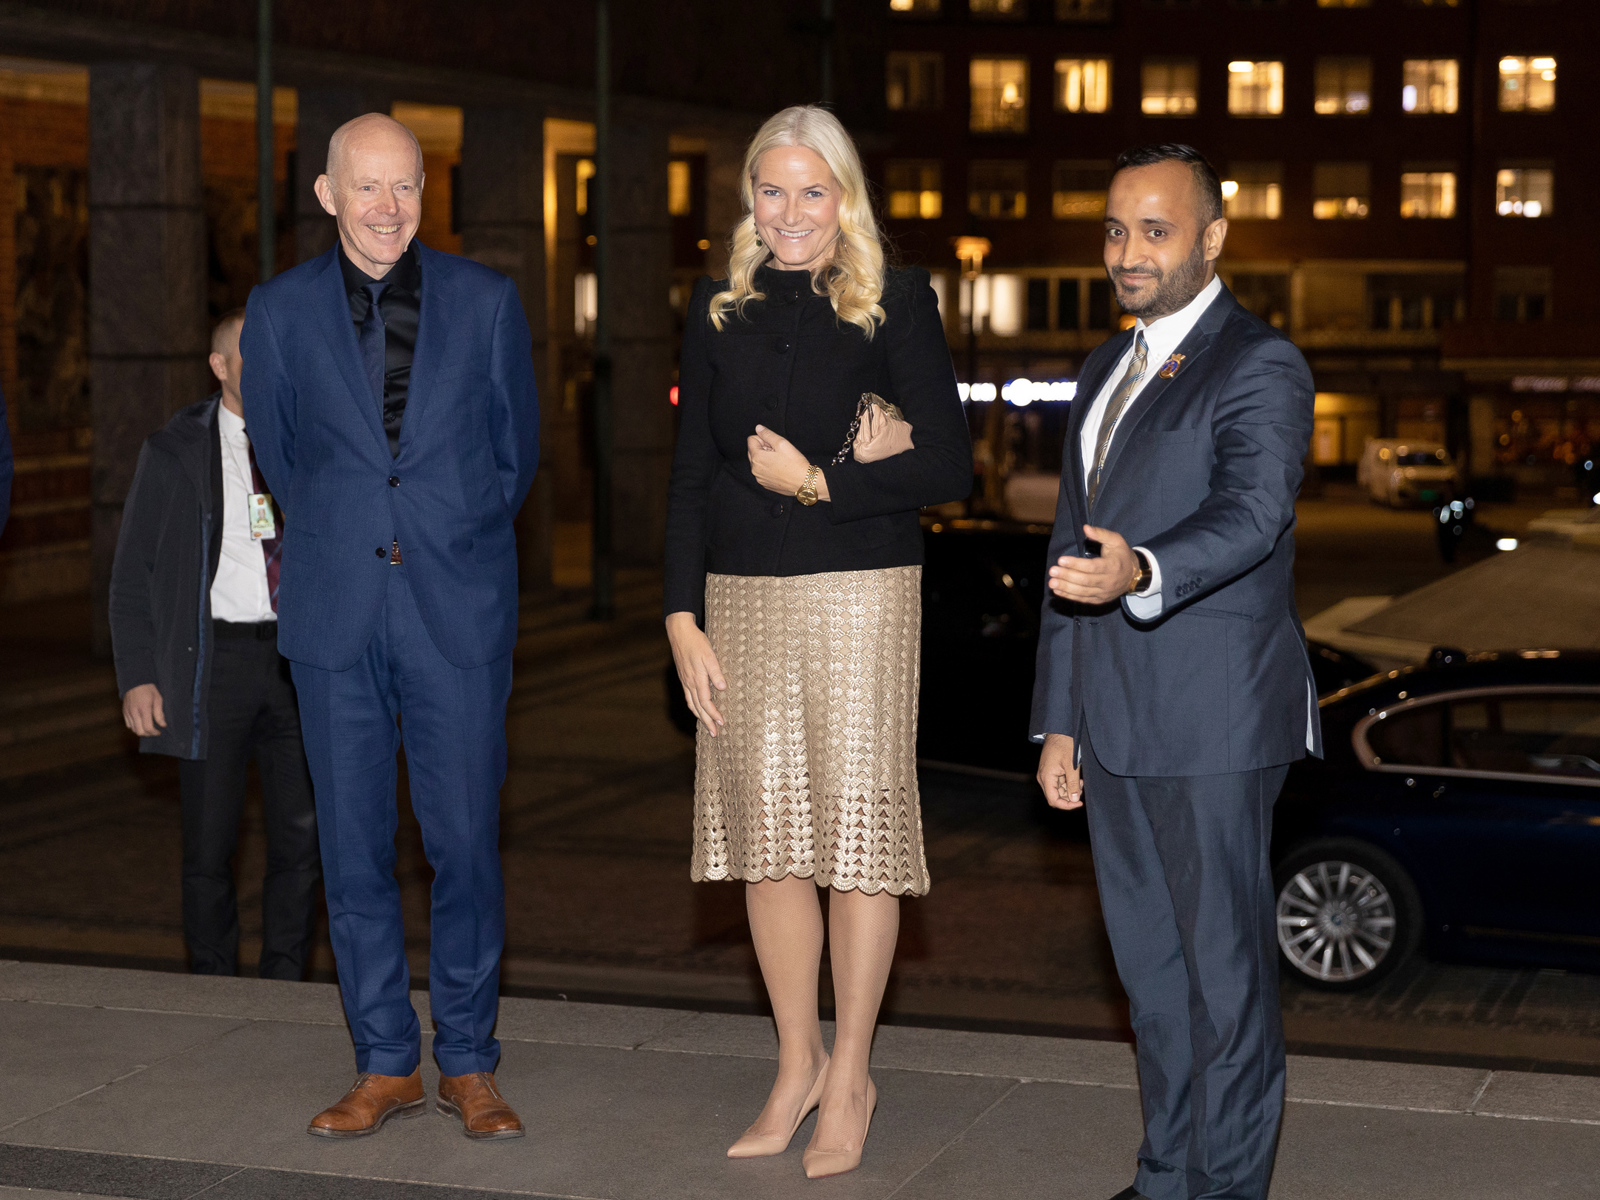 AHO-rektor Ole Gustavsen, kronprinsesse Mette-Marit og varaordfører Abdullah Alsabeehg ankommer Oslo rådhus. Foto.